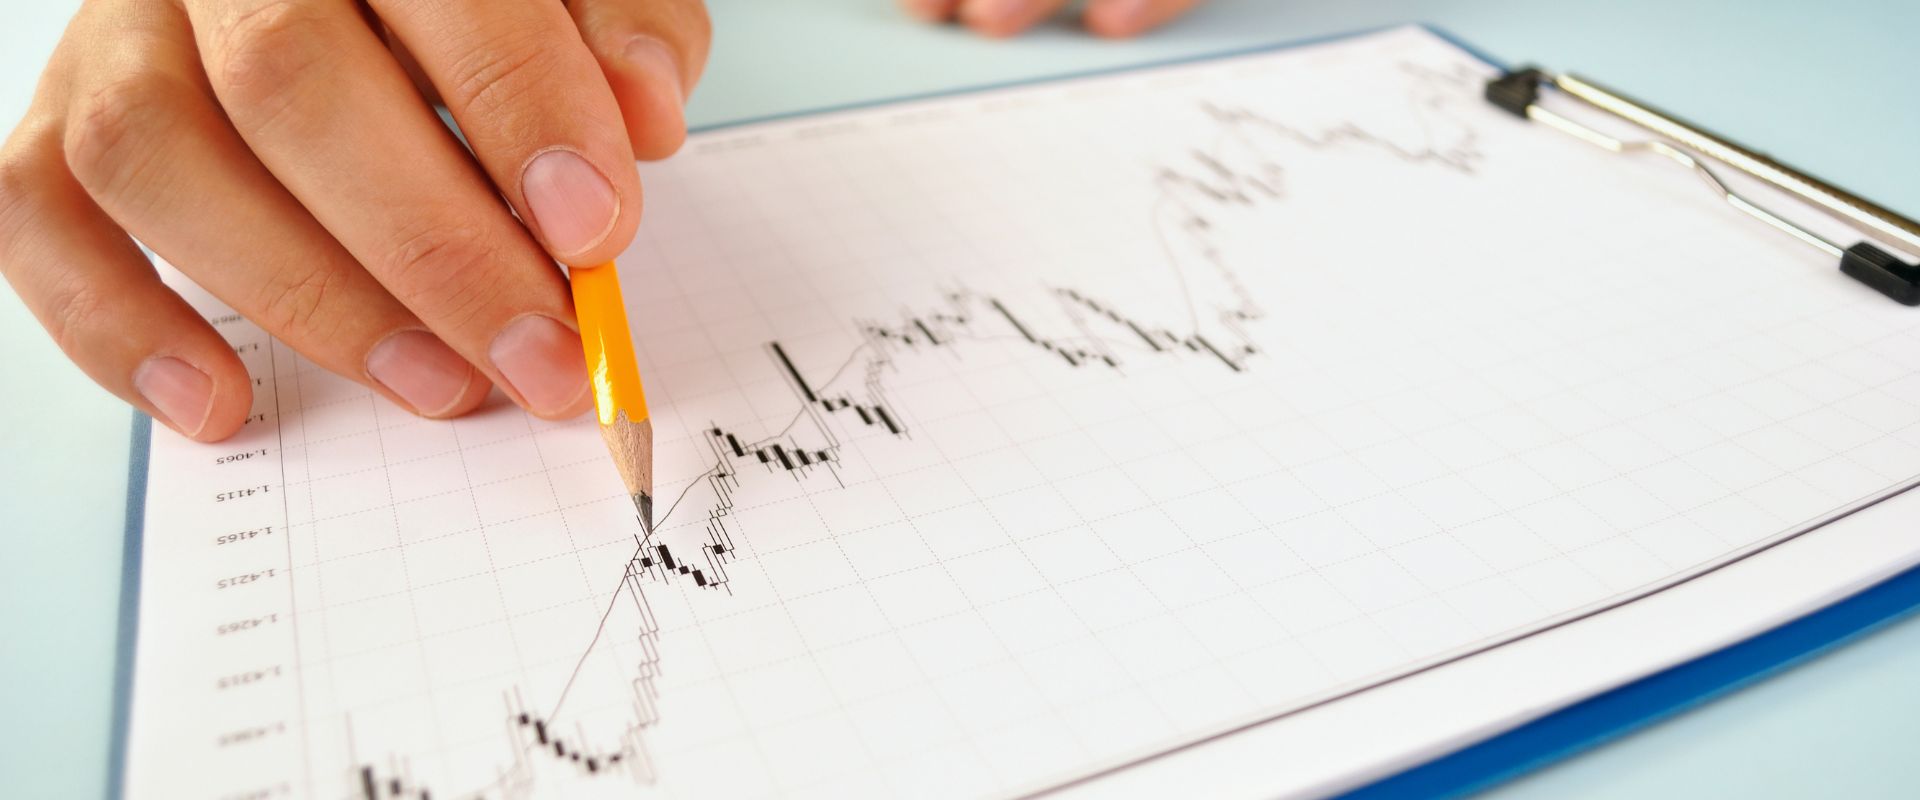 man analyzing an upward market trend graph